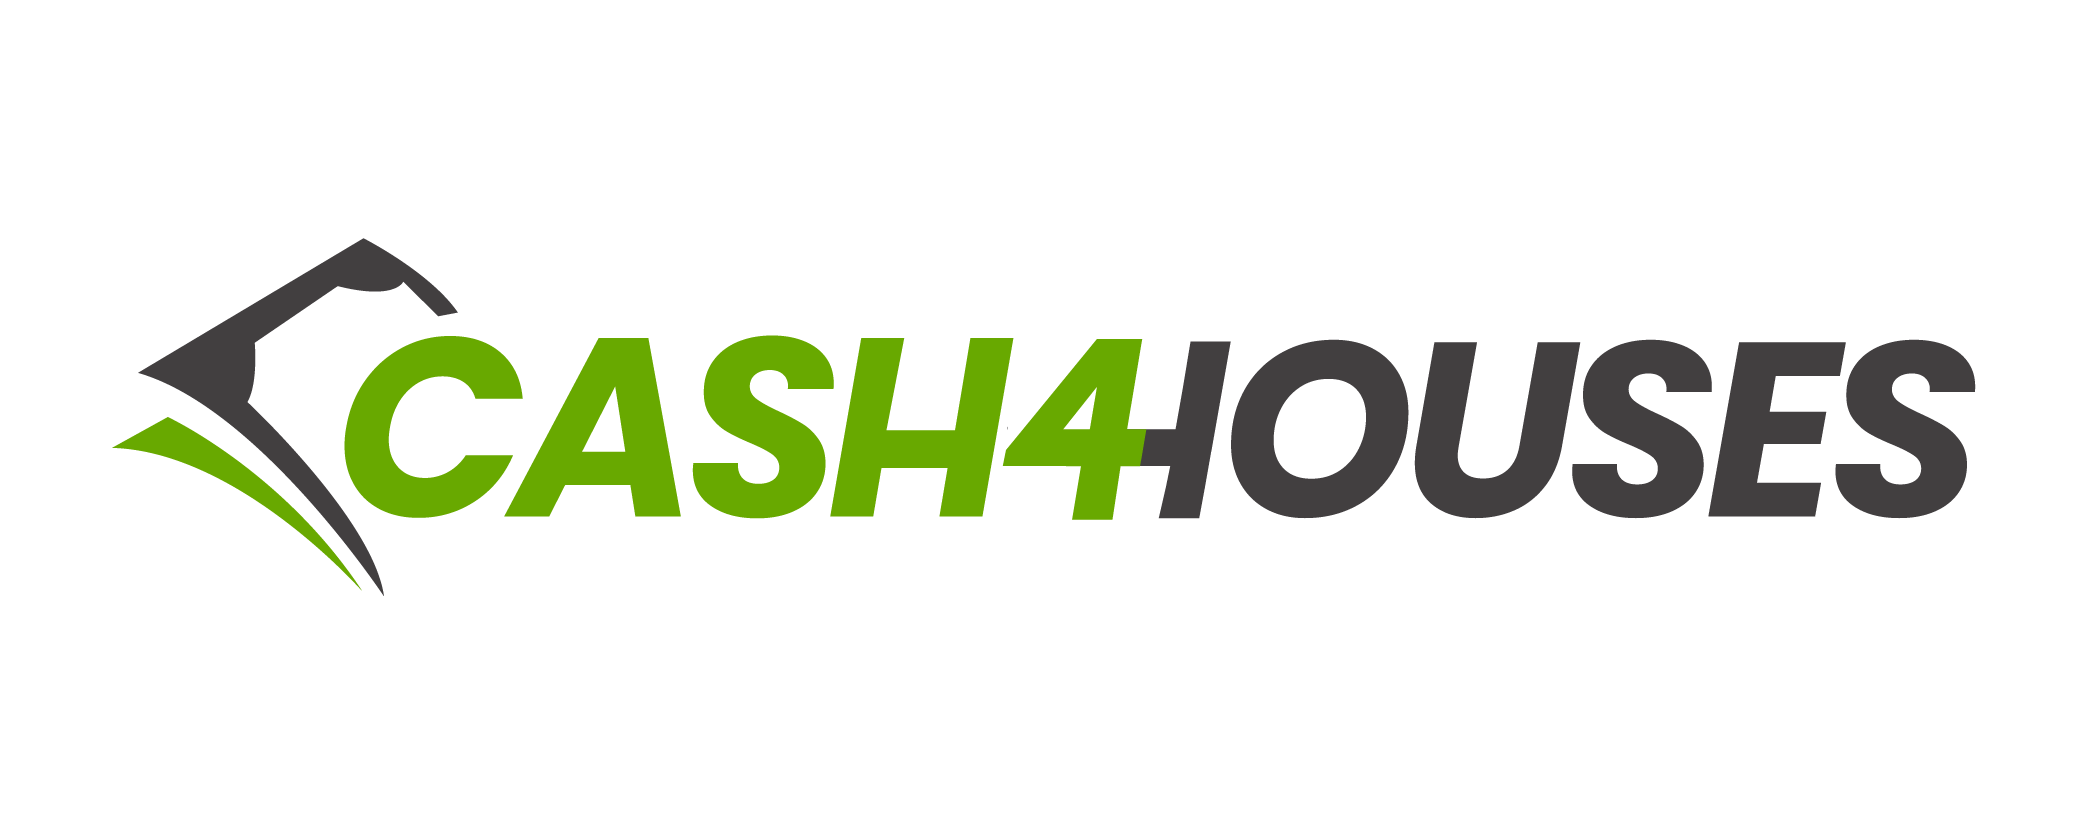 Cash 4 Houses Logo